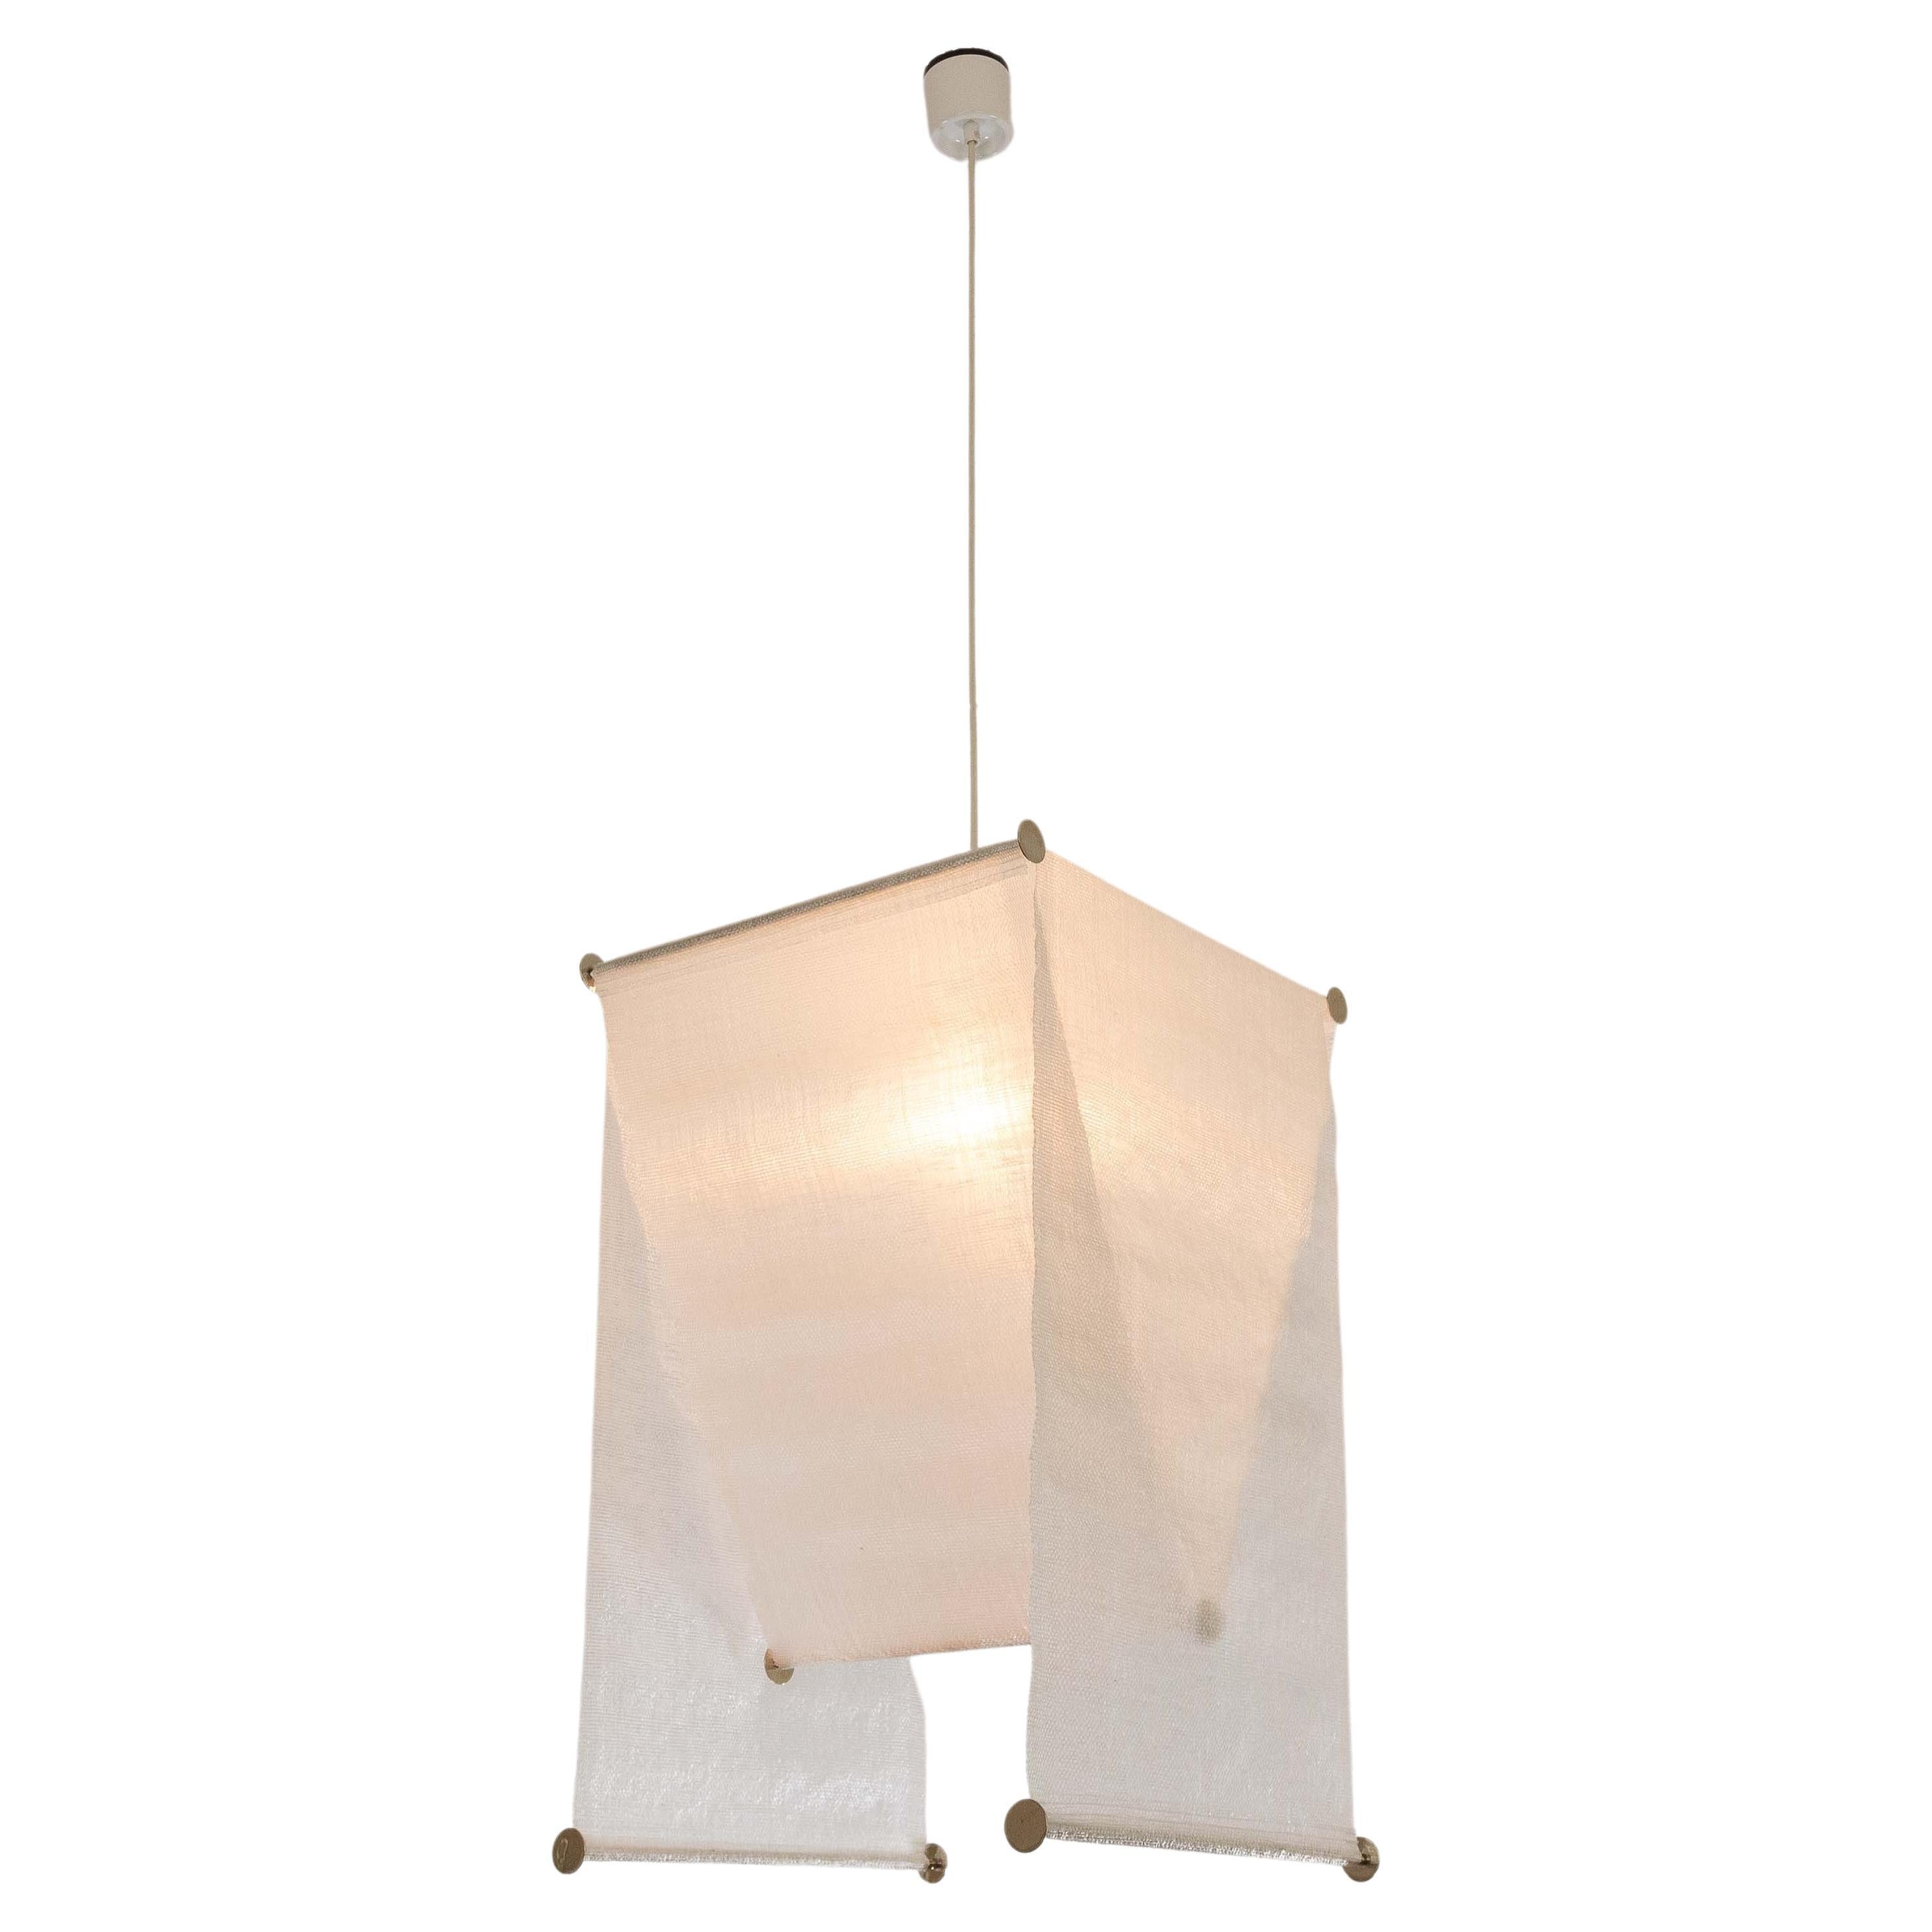 Teli Pendant Lamp by Achille and Pier Giacomo Castiglioni